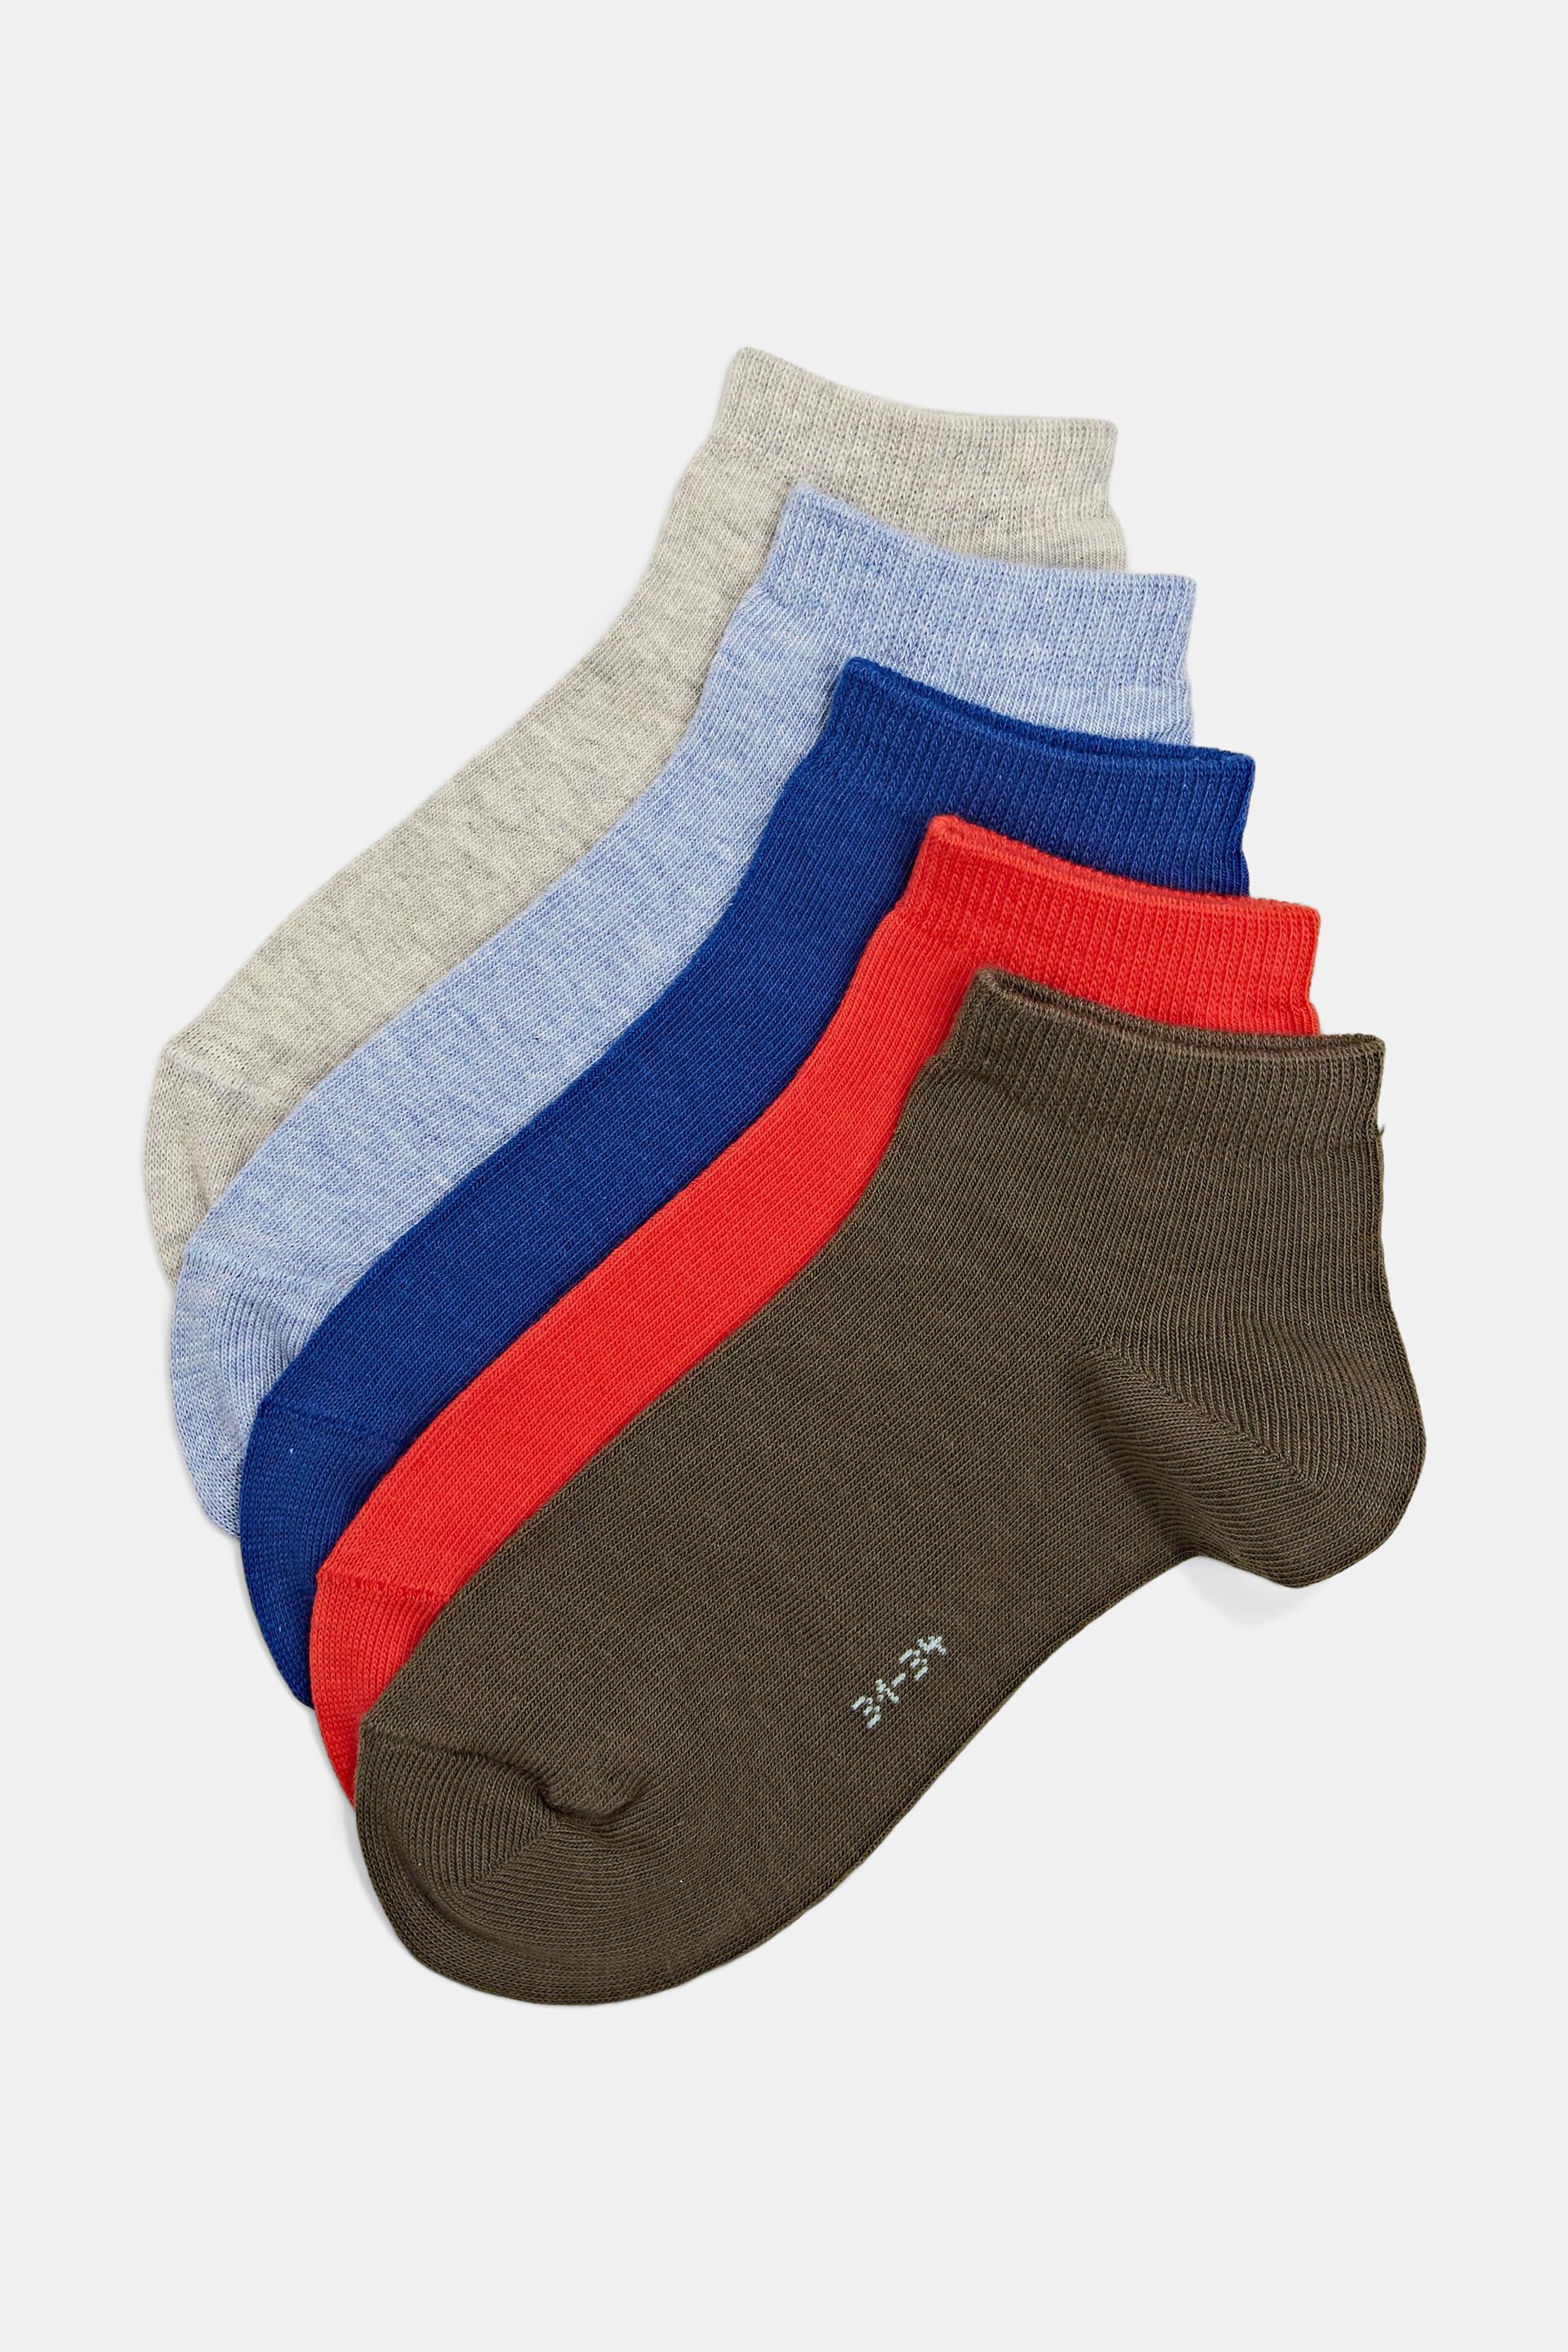 Packung mit 5 Paar einfarbigen Socken aus einer Bio-Baumwollmischung | 